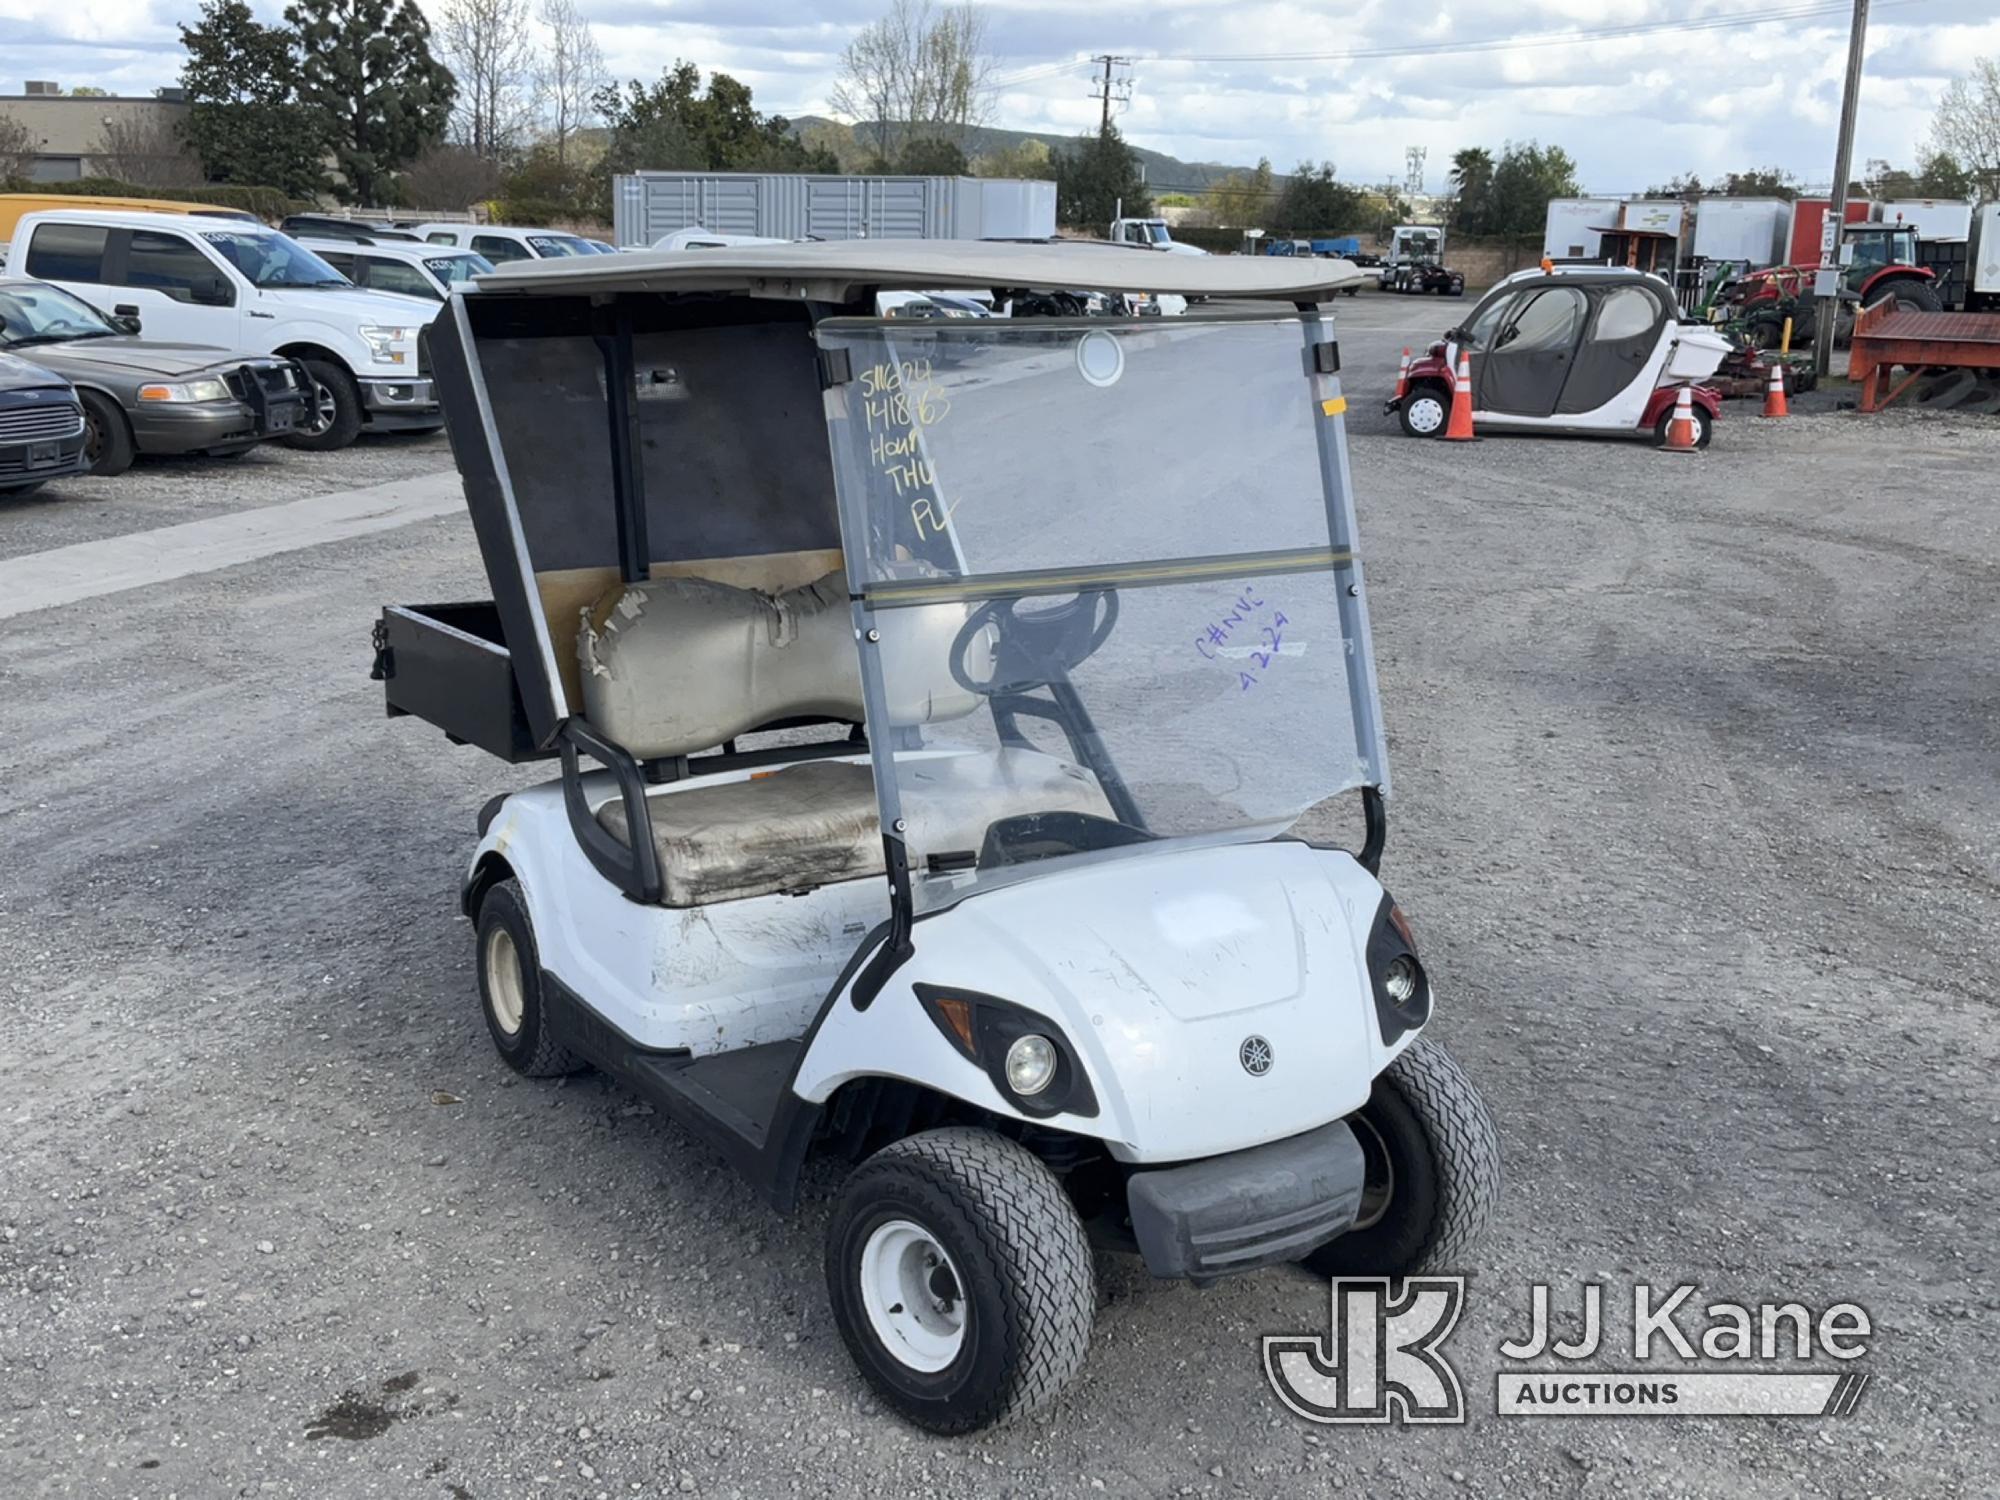 (Jurupa Valley, CA) 2011 Yamaha Golf Cart Runs & Moves, No Key